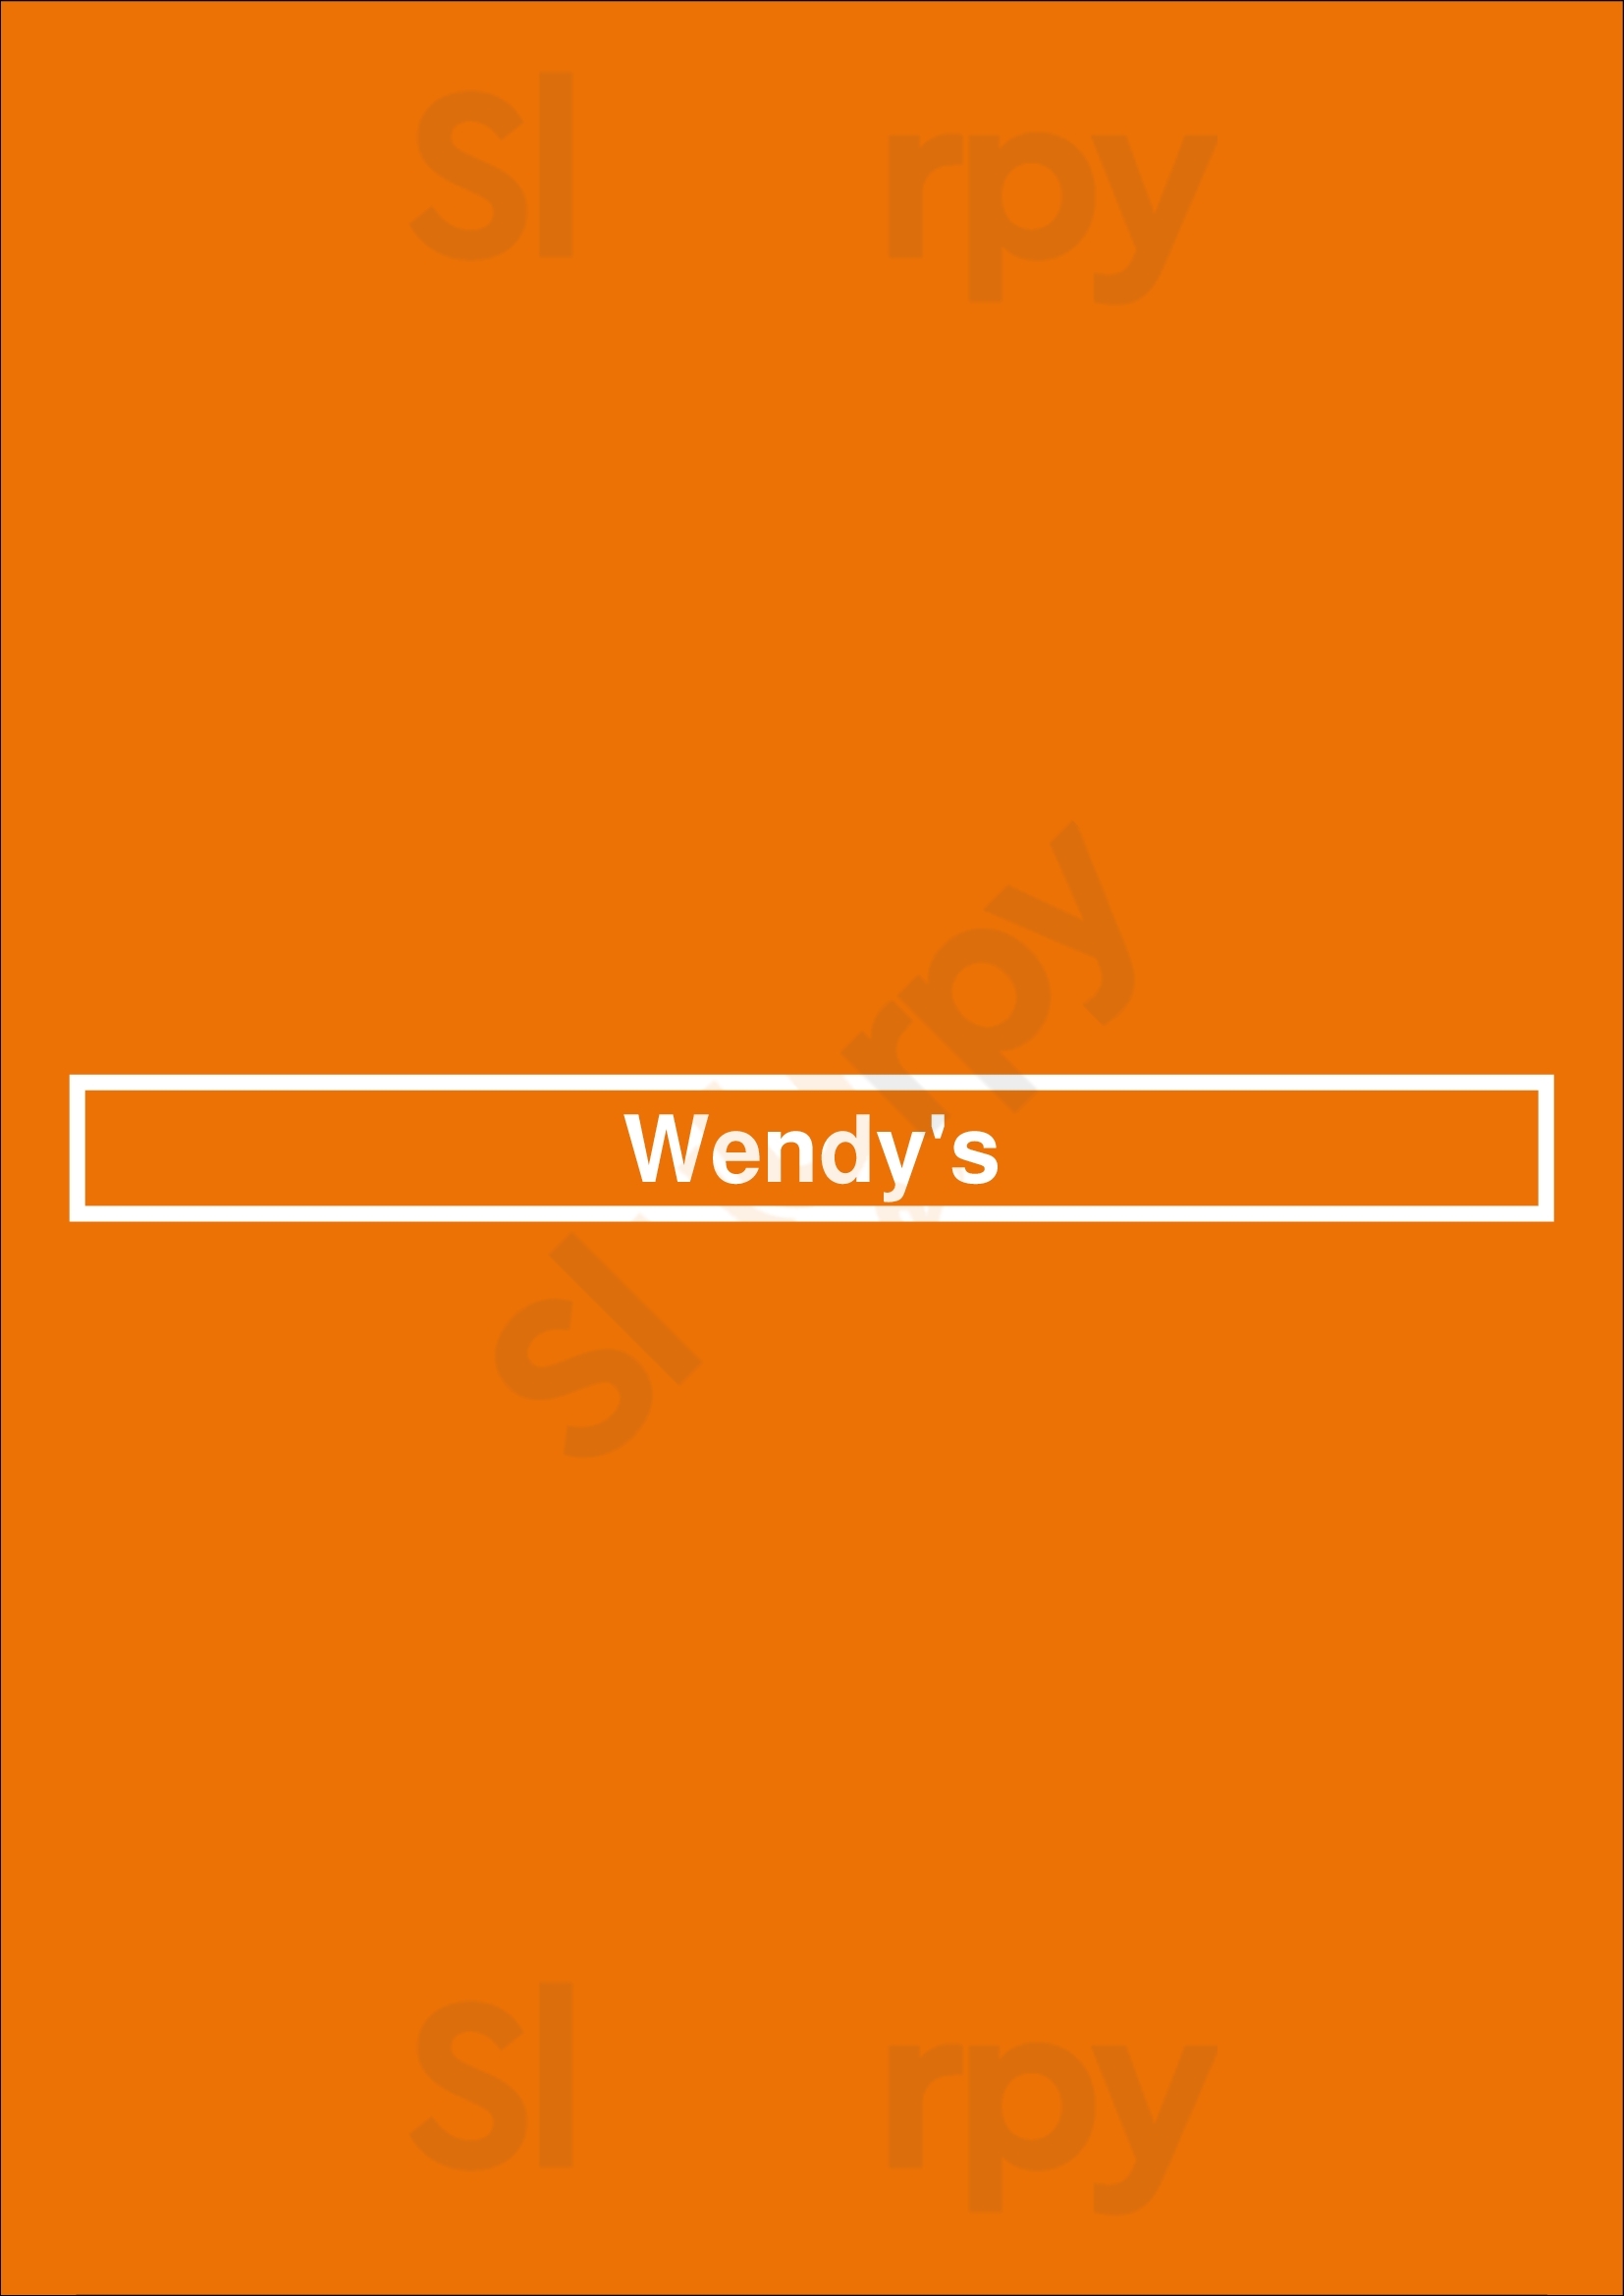 Wendy's Fresno Menu - 1